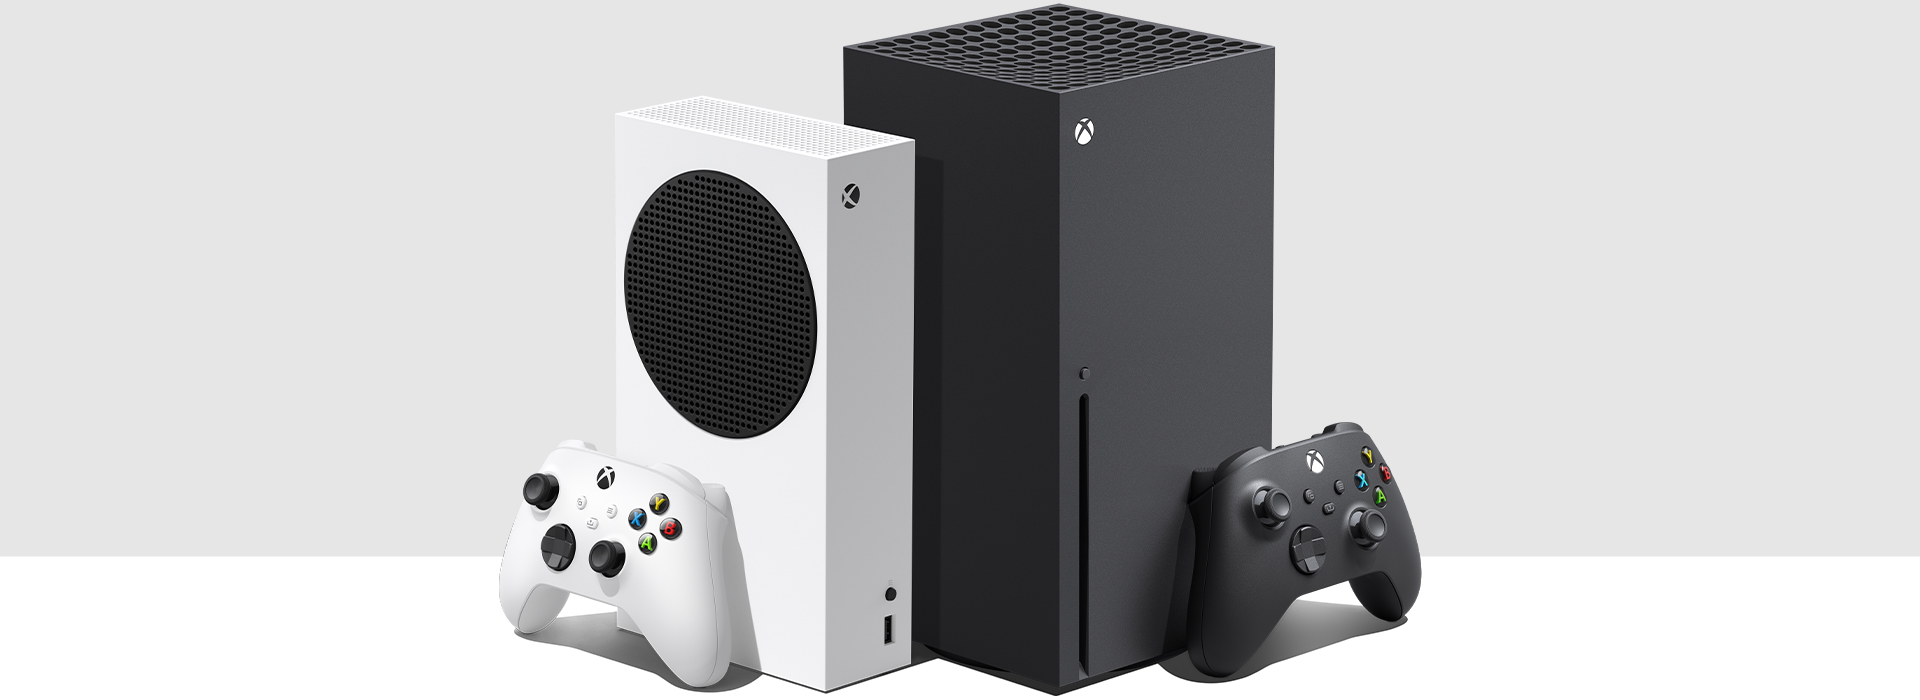 Des consoles Xbox Series S et Xbox Series X côte à côte.